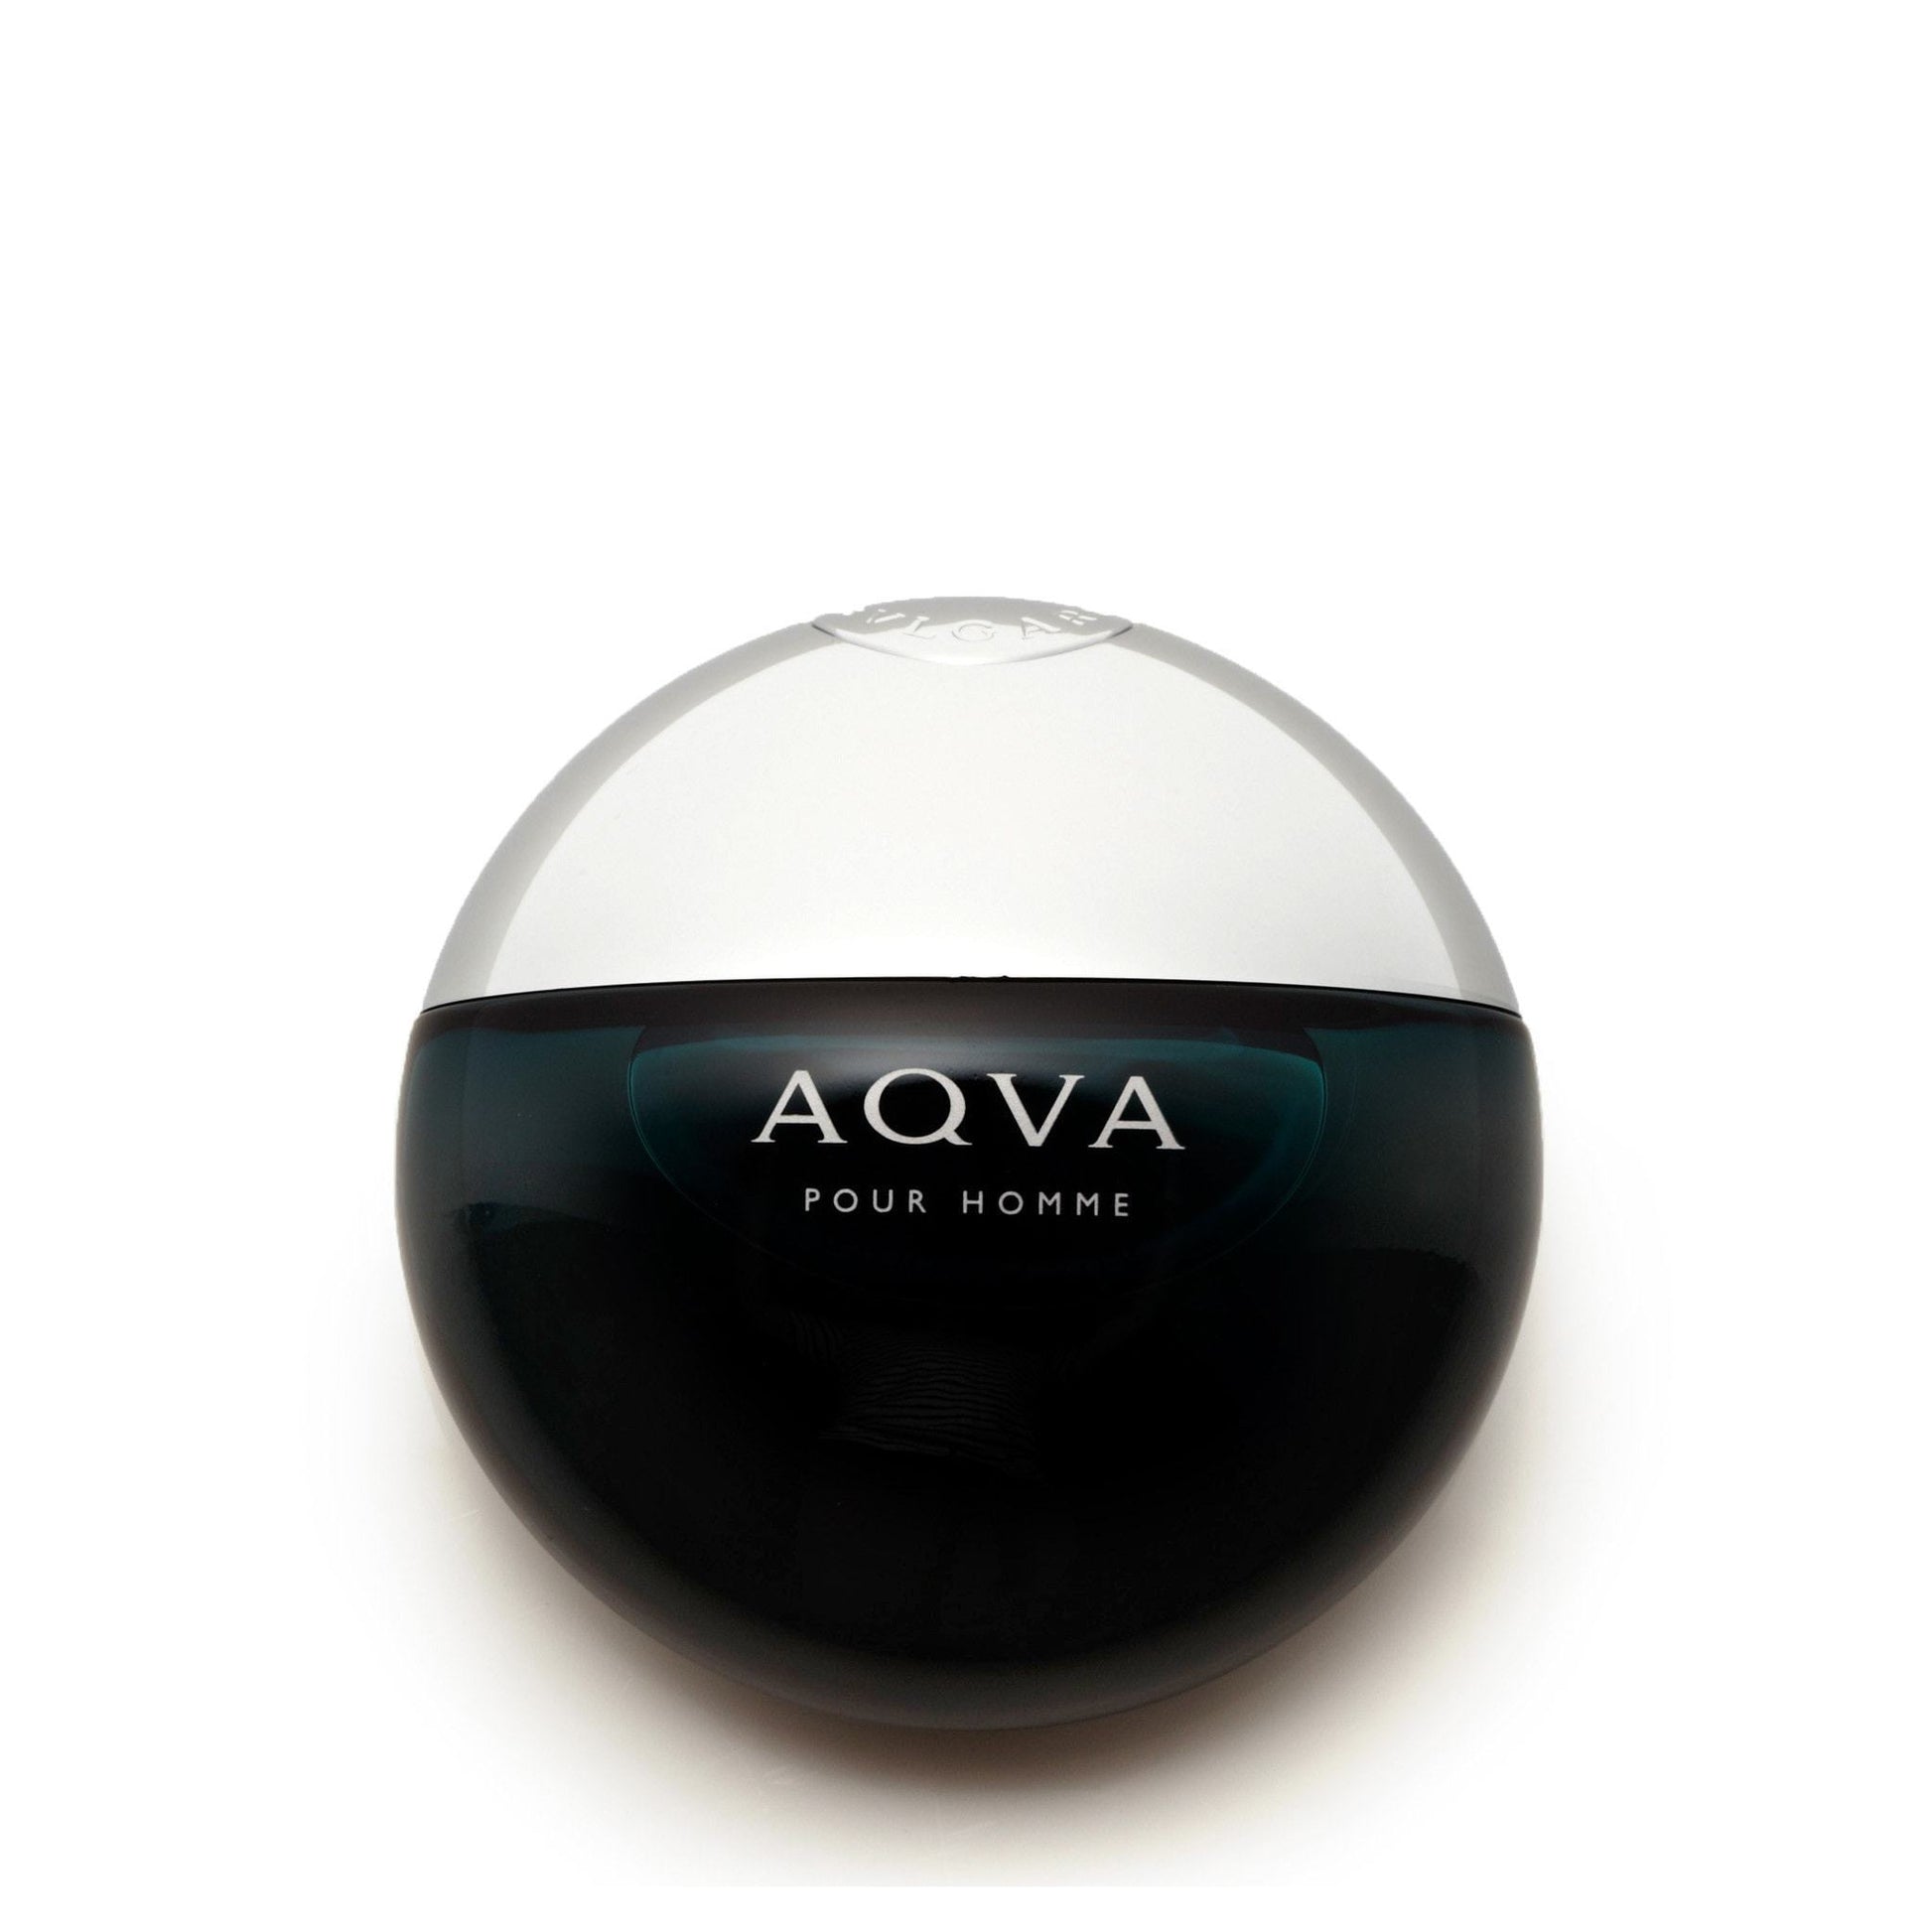 Aqva Eau de Toilette Spray for Men by Bvlgari, Product image 2